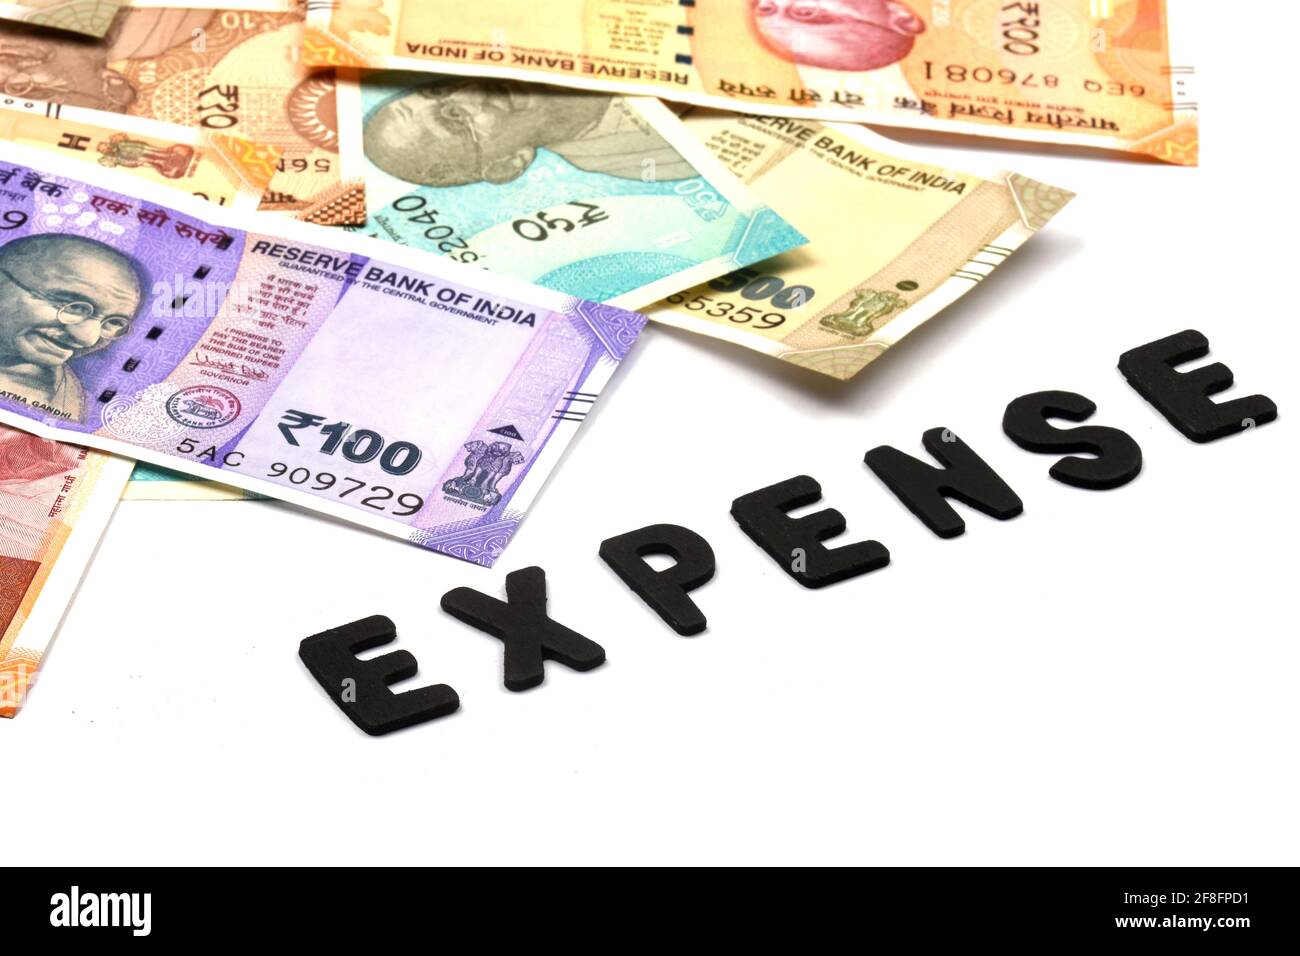 Concetto di spesa, alfabeto di spesa su sfondo monetario, valuta indiana, rupia, rupia indiana, denaro indiano, Affari, finanza, investimenti, Foto Stock